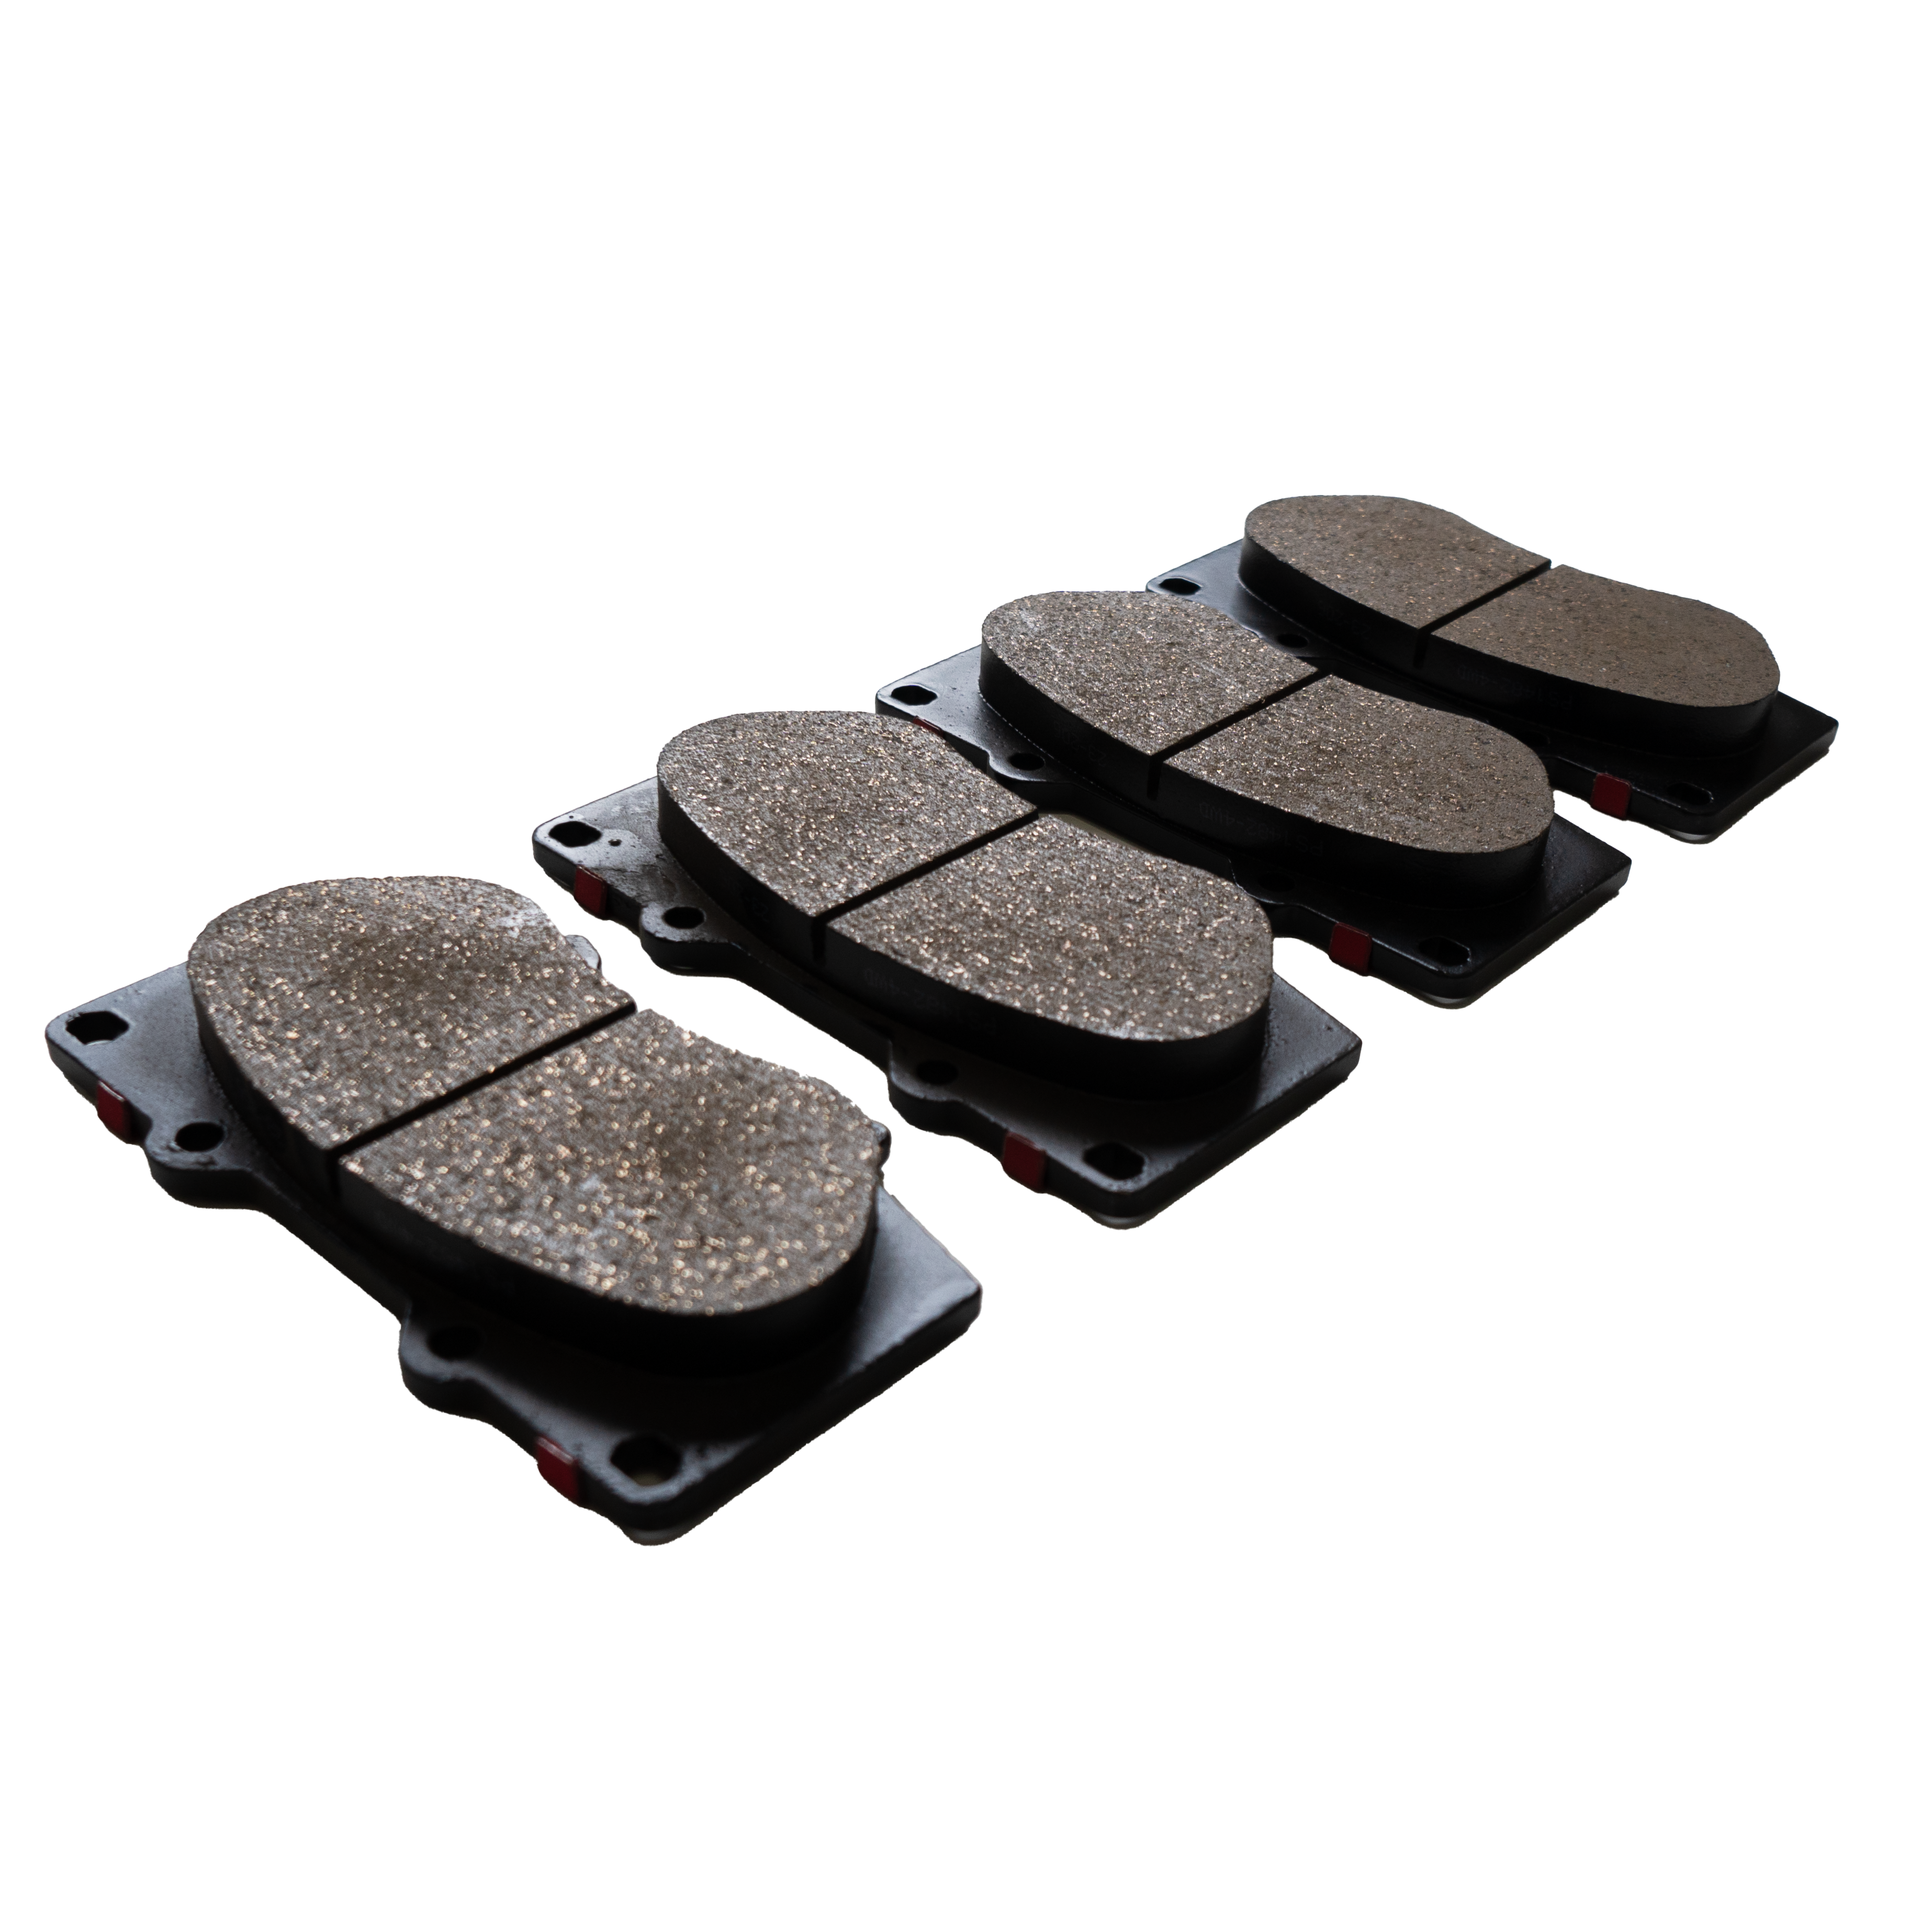 Hilux PowerStop Titanium Ceramic FRONT Brake Pads